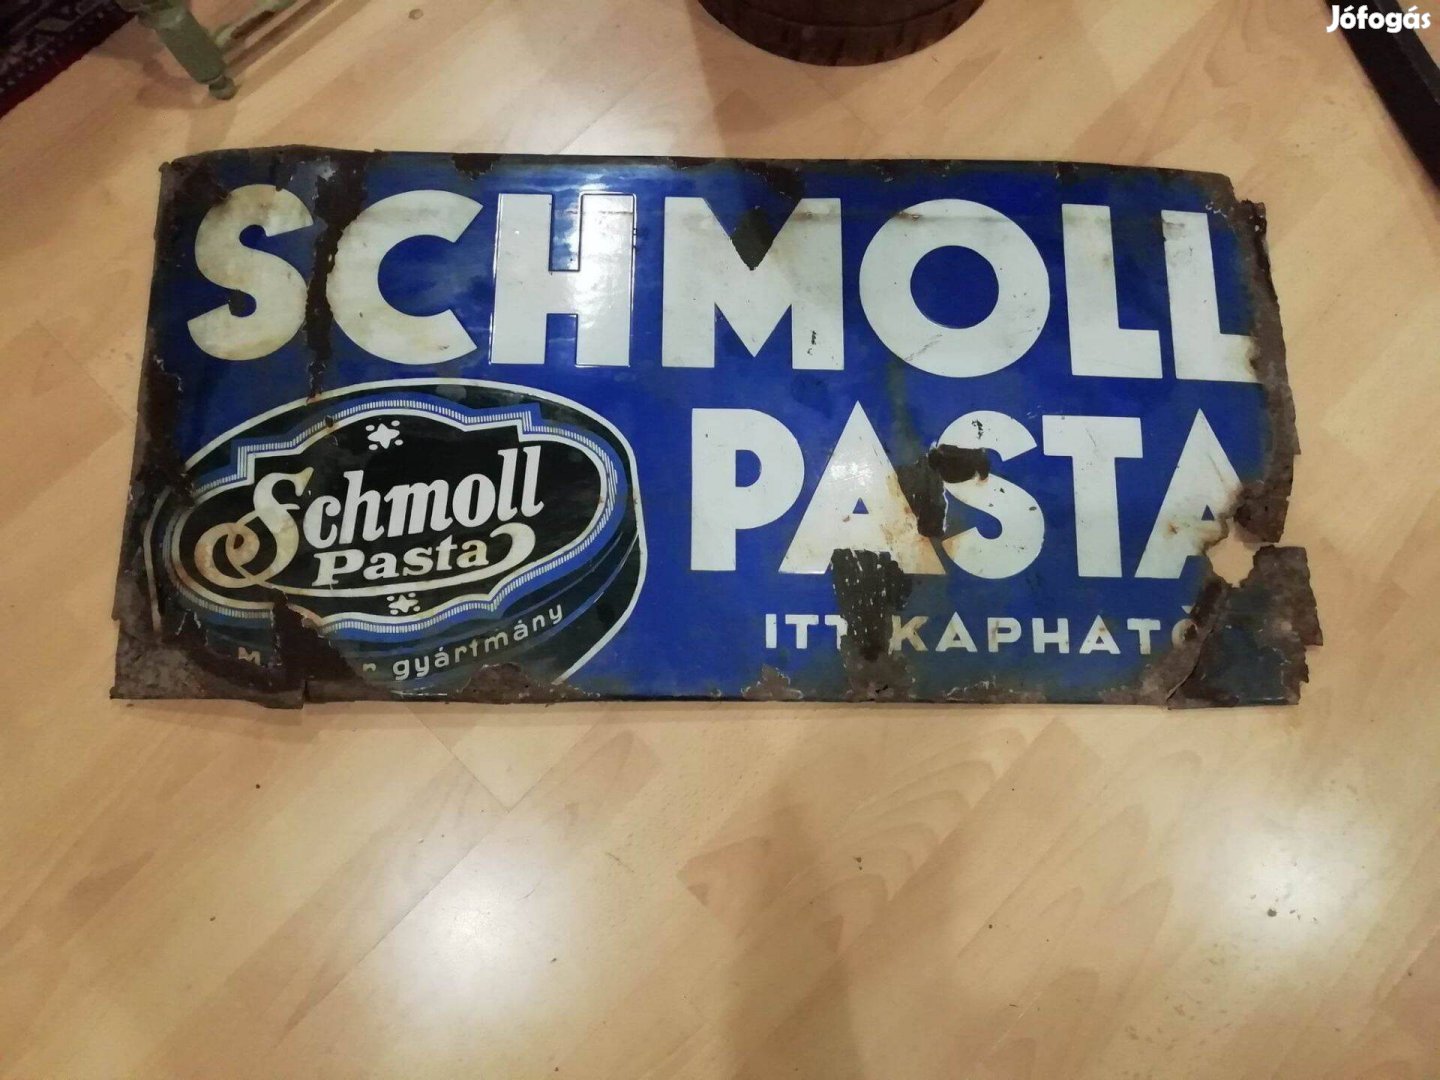 Schmoll pasta zománctábla, sérült igaz, de ritka gyűjtői zománctábla